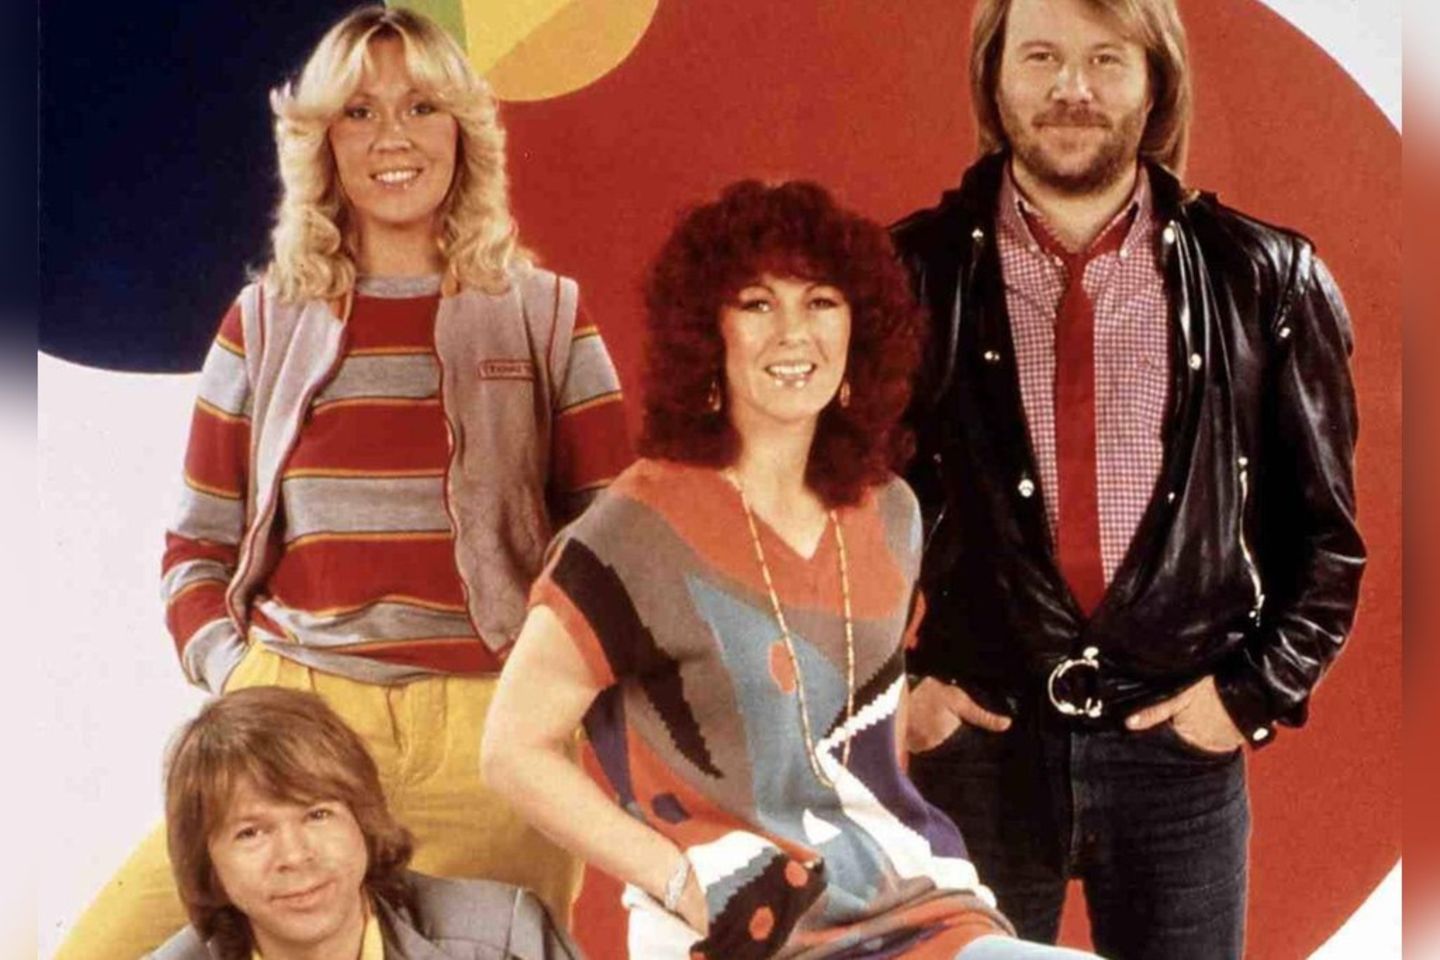 Die schwedische Kultband ABBA (Agnetha Fältskog, Björn Ulvaeus, Benny Andersson, Anni-Frid Lyngstad) gewann 1974 den Grand Pri